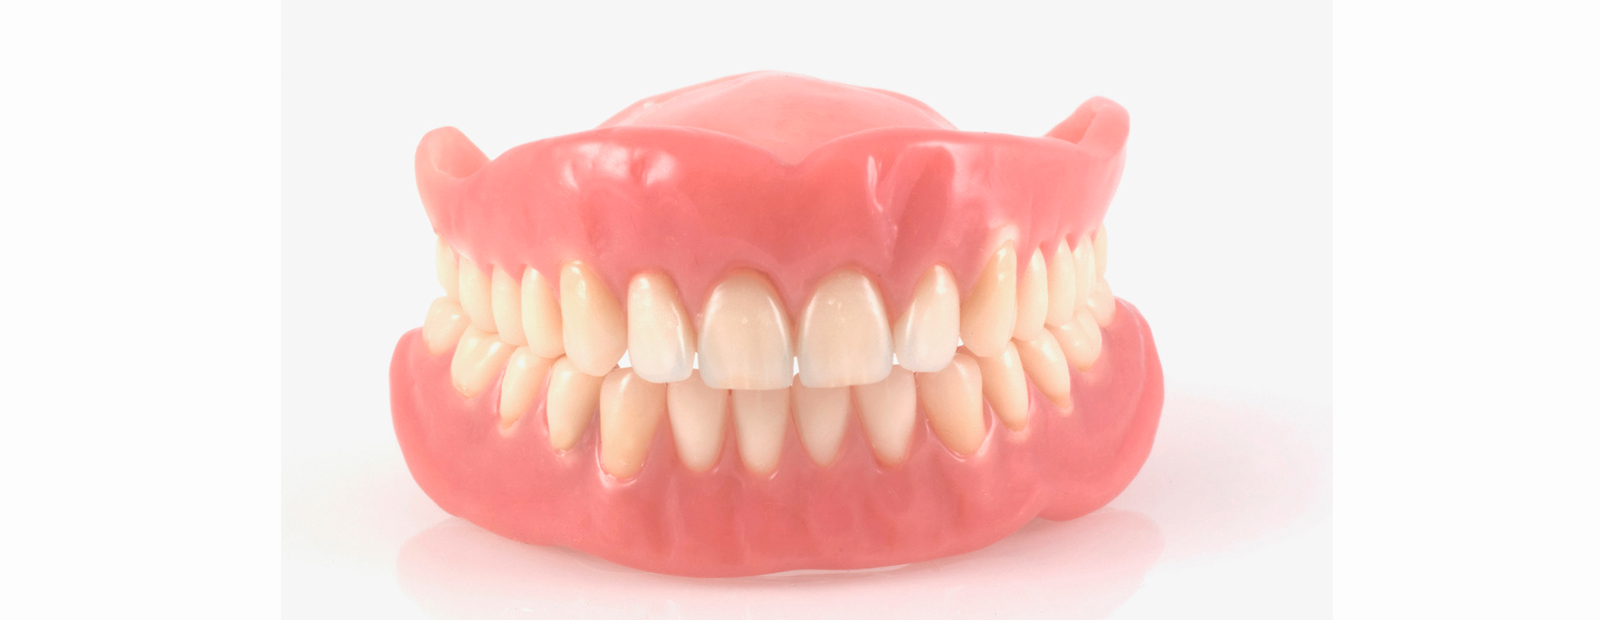 Ohne zahnersatz gaumenplatte oberkiefer Zahnprothese ohne